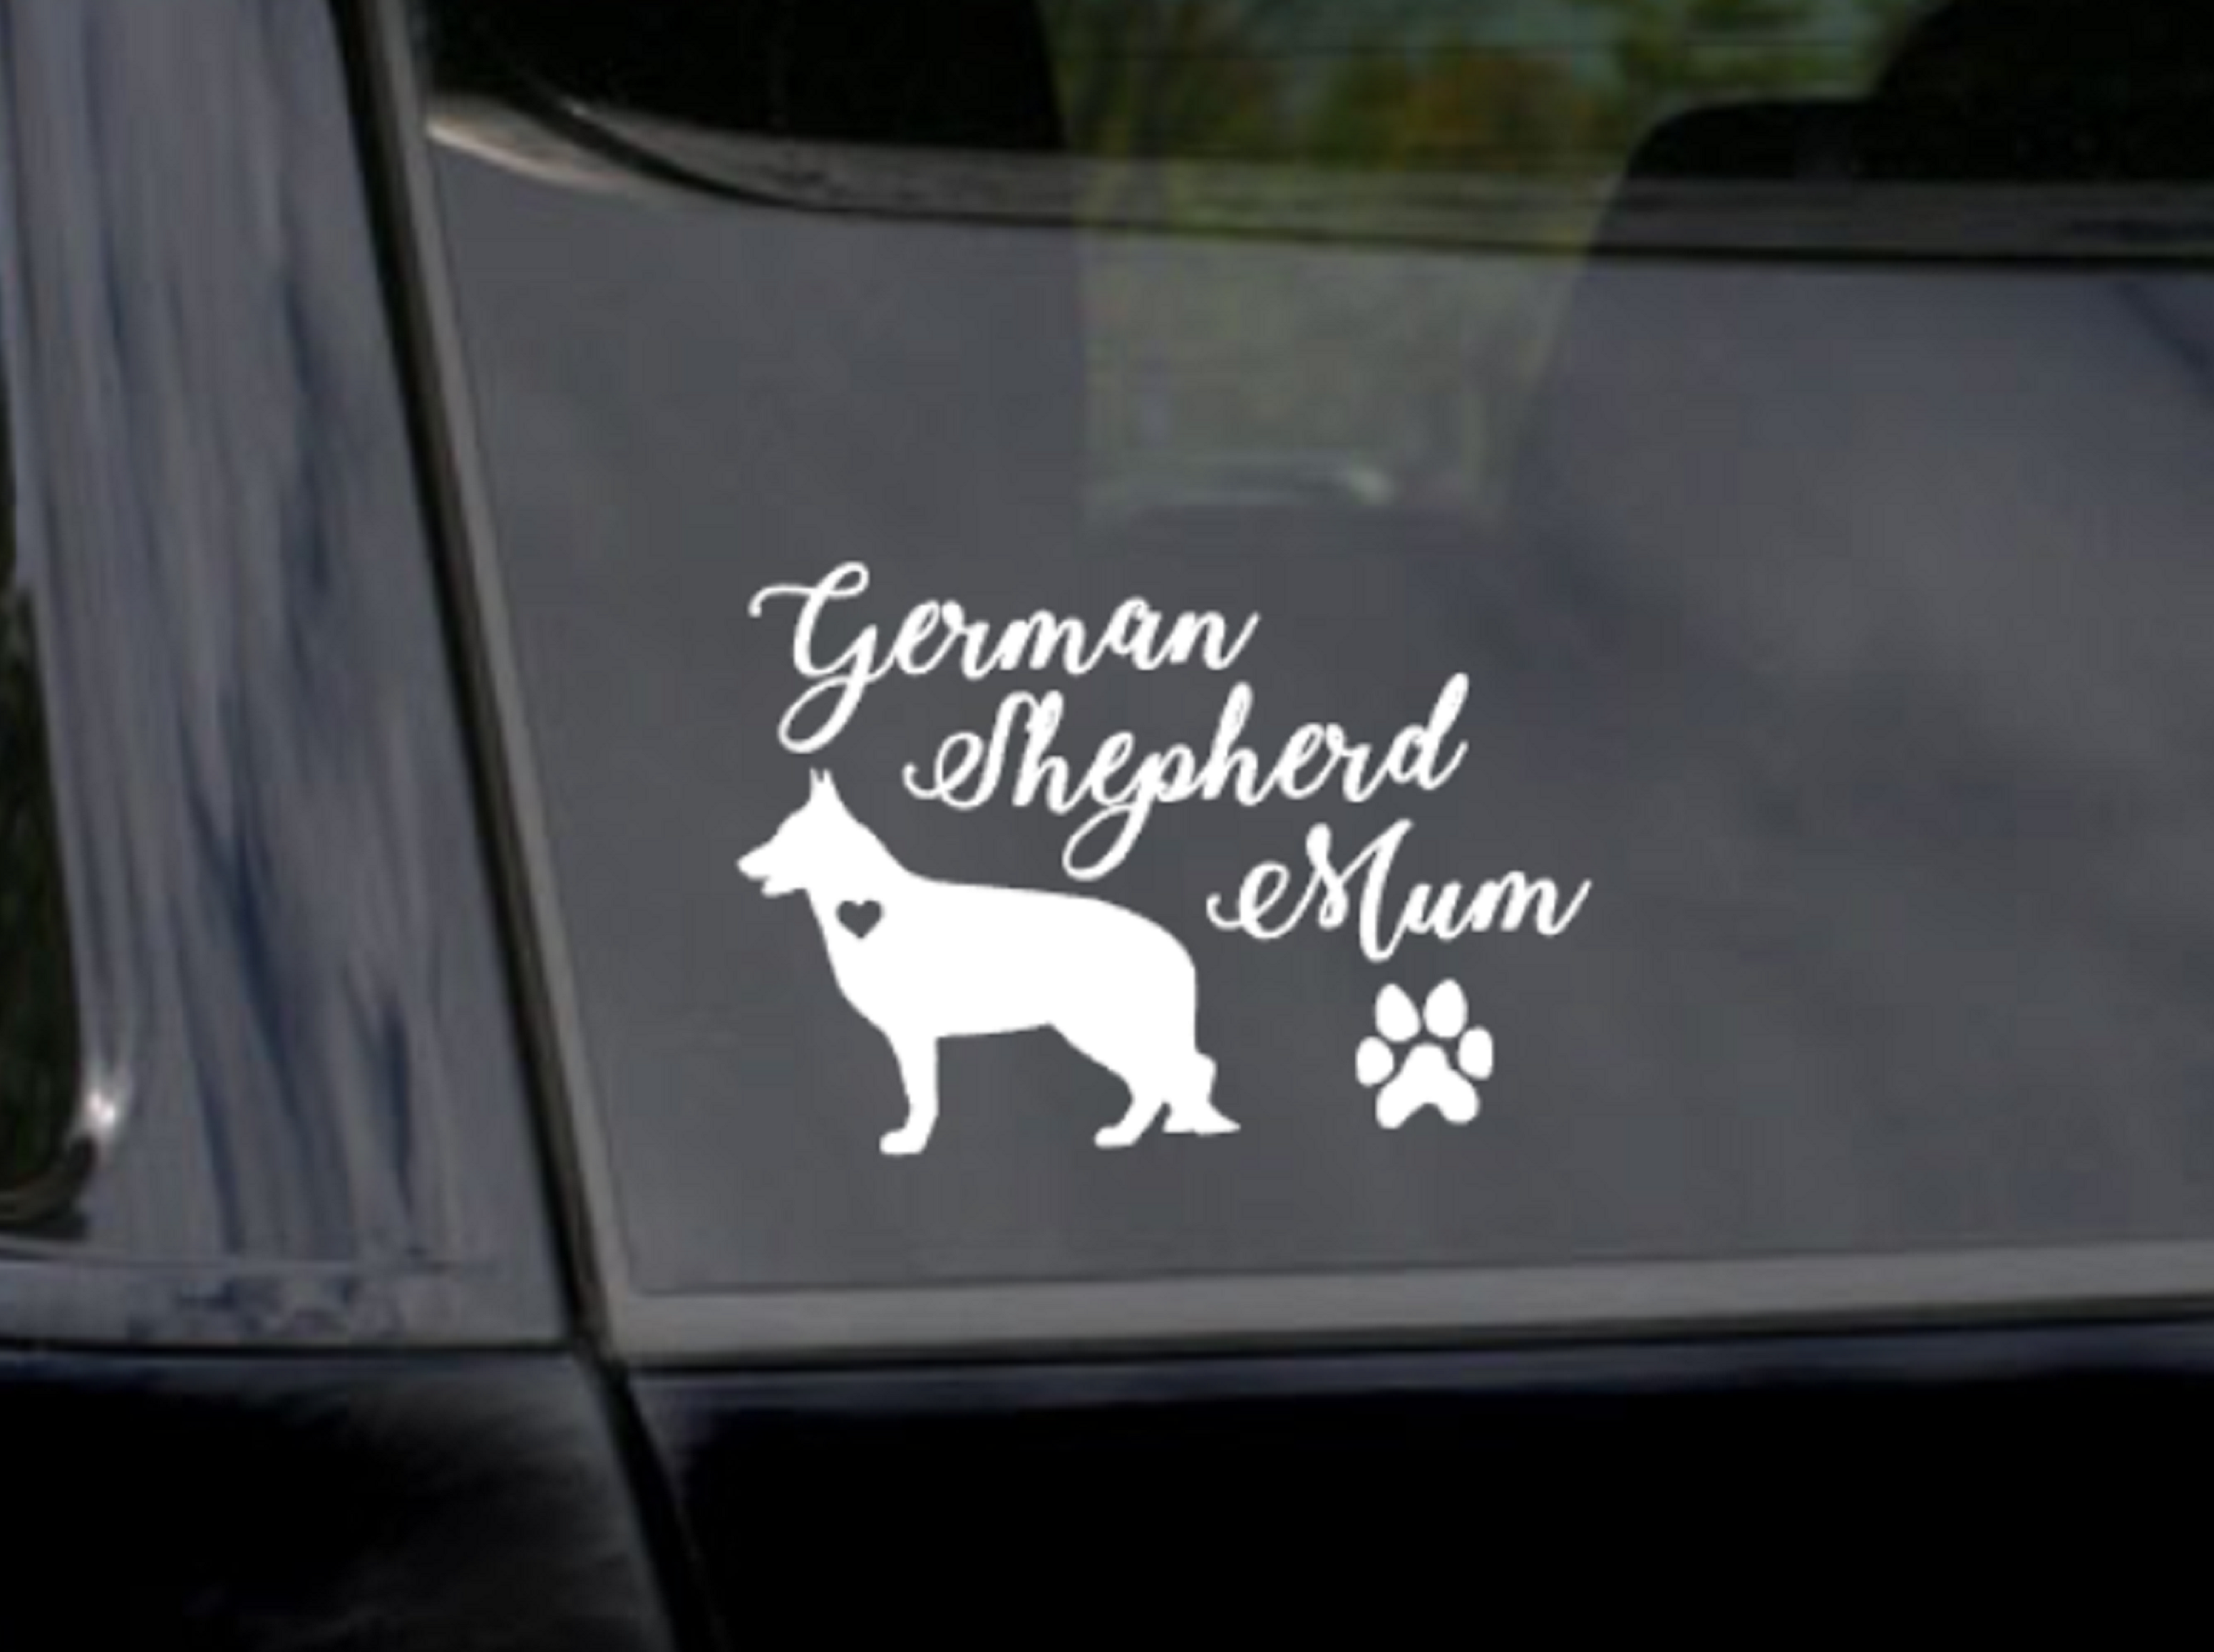 German Shepherd Mum Sticker Car Decal - My Crafty Dog